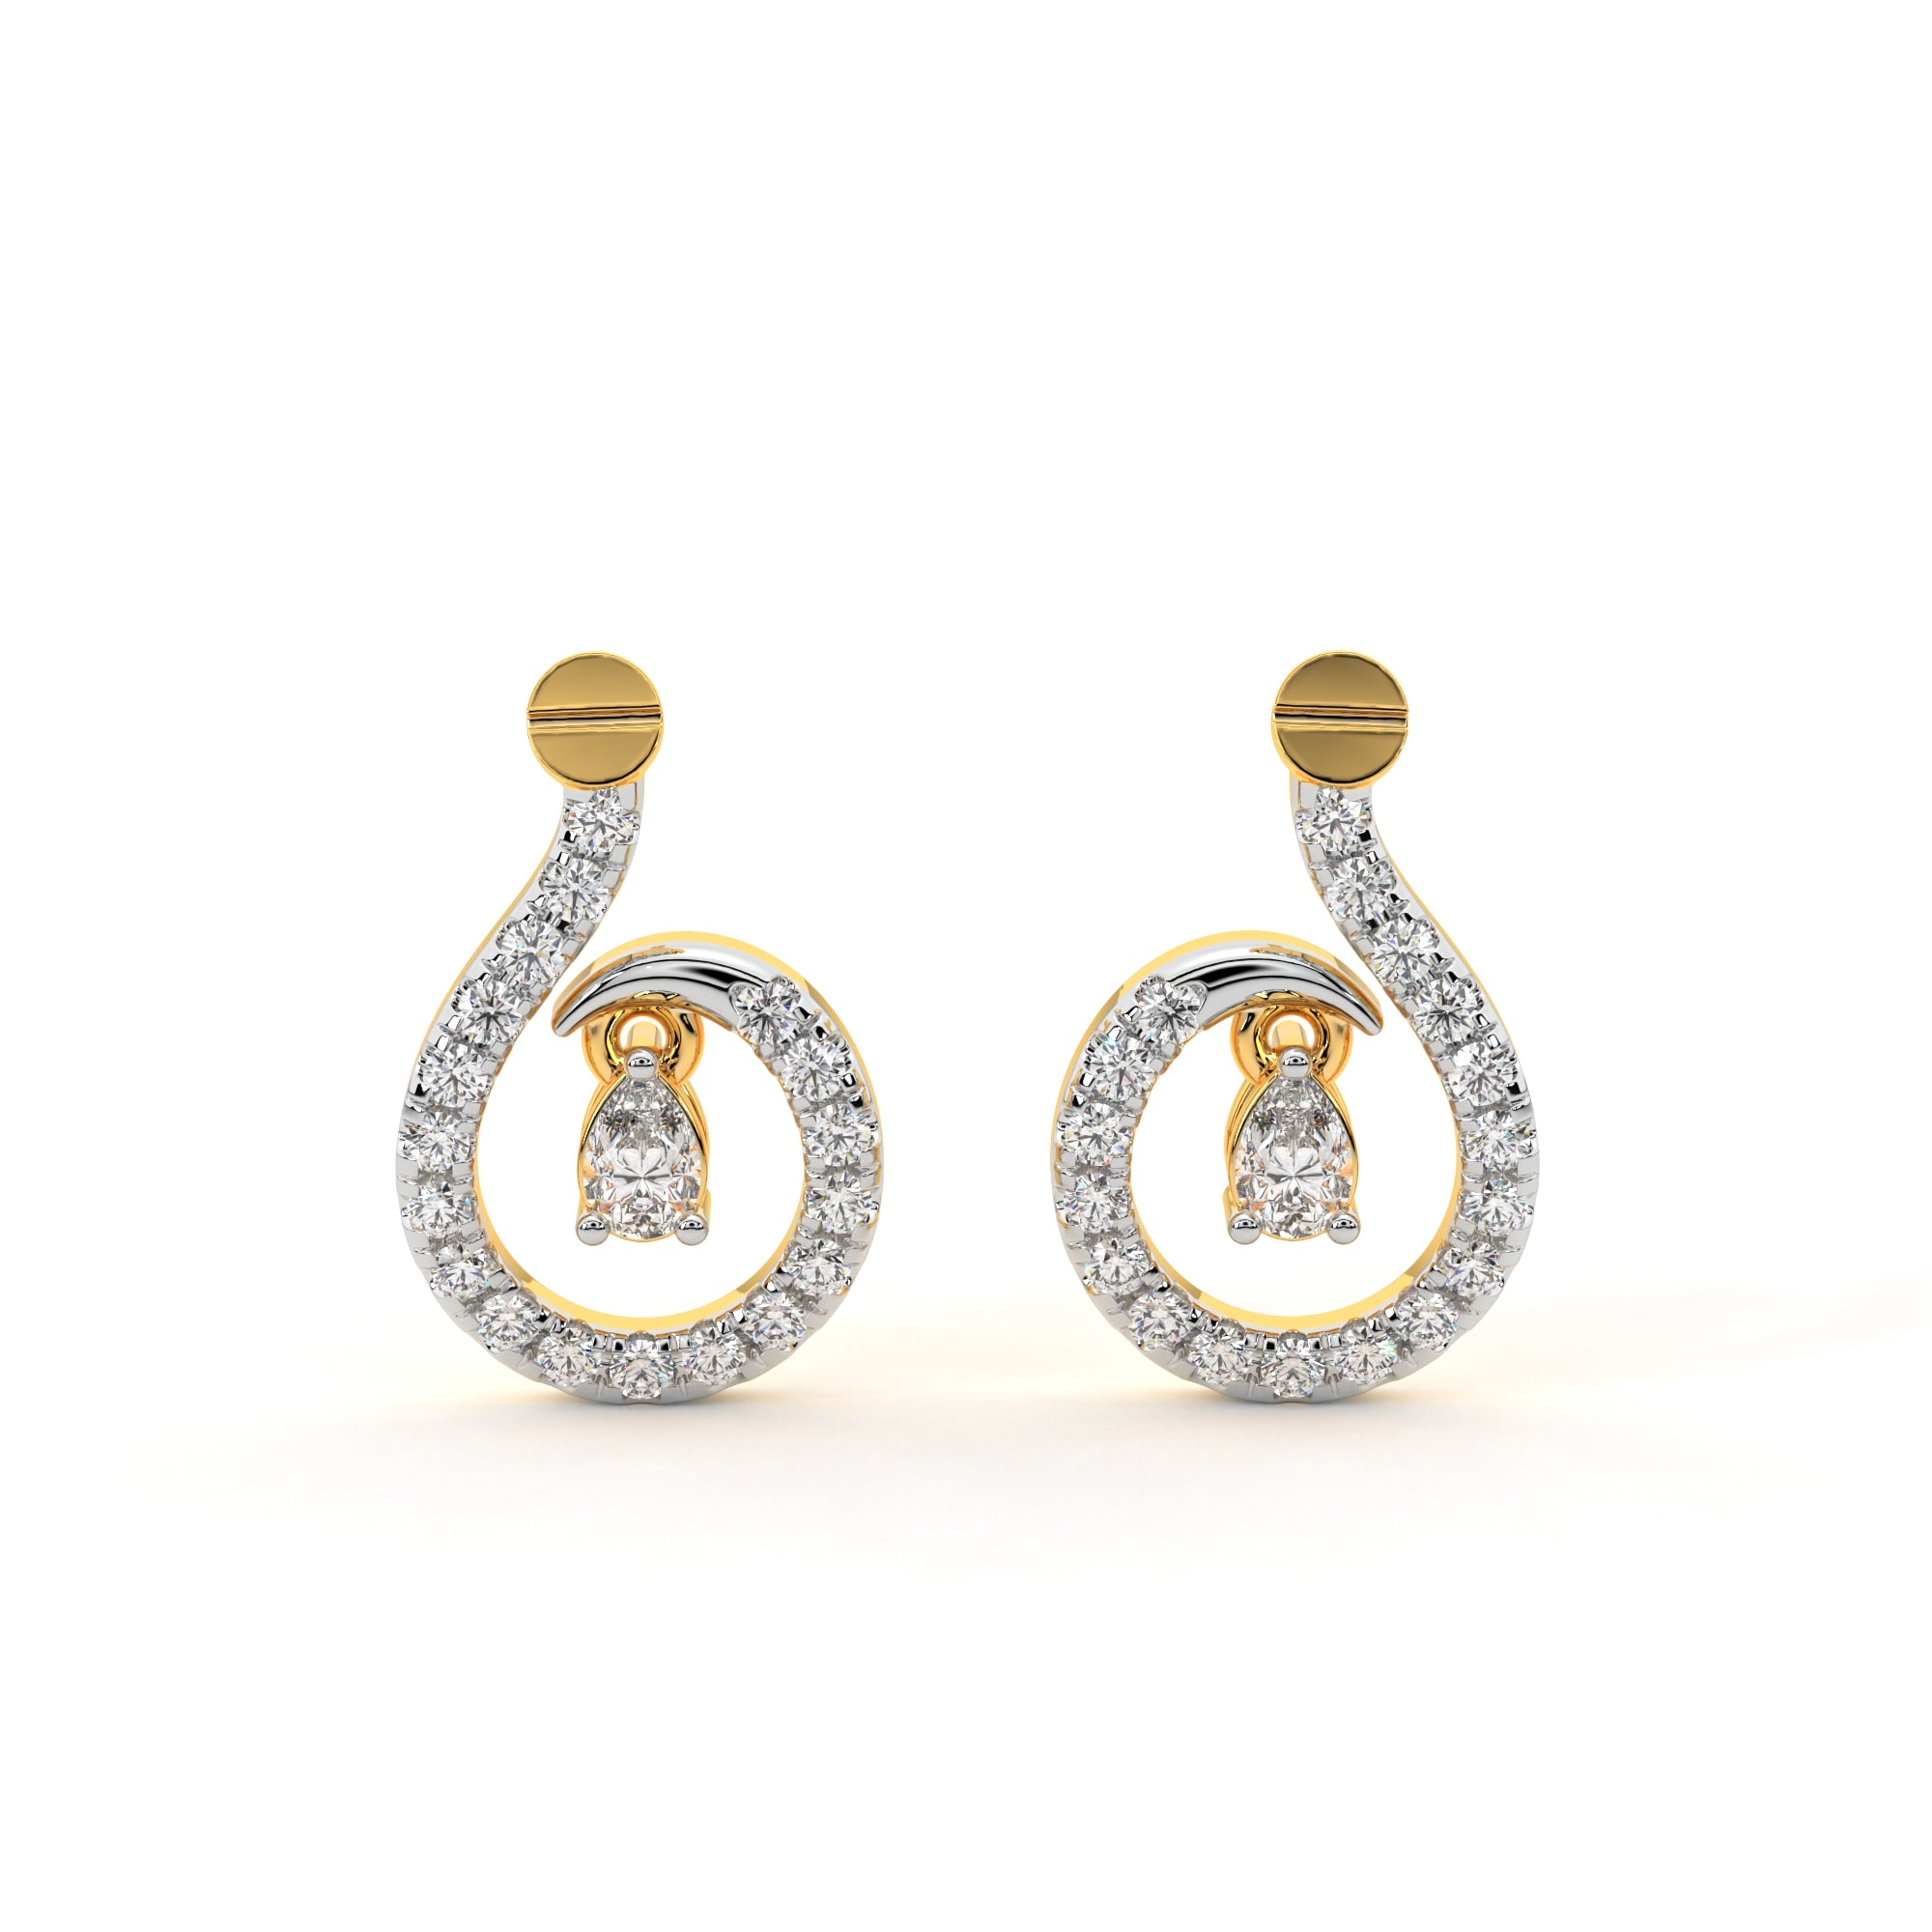 Whispering Embrace Pear Diamond Earrings